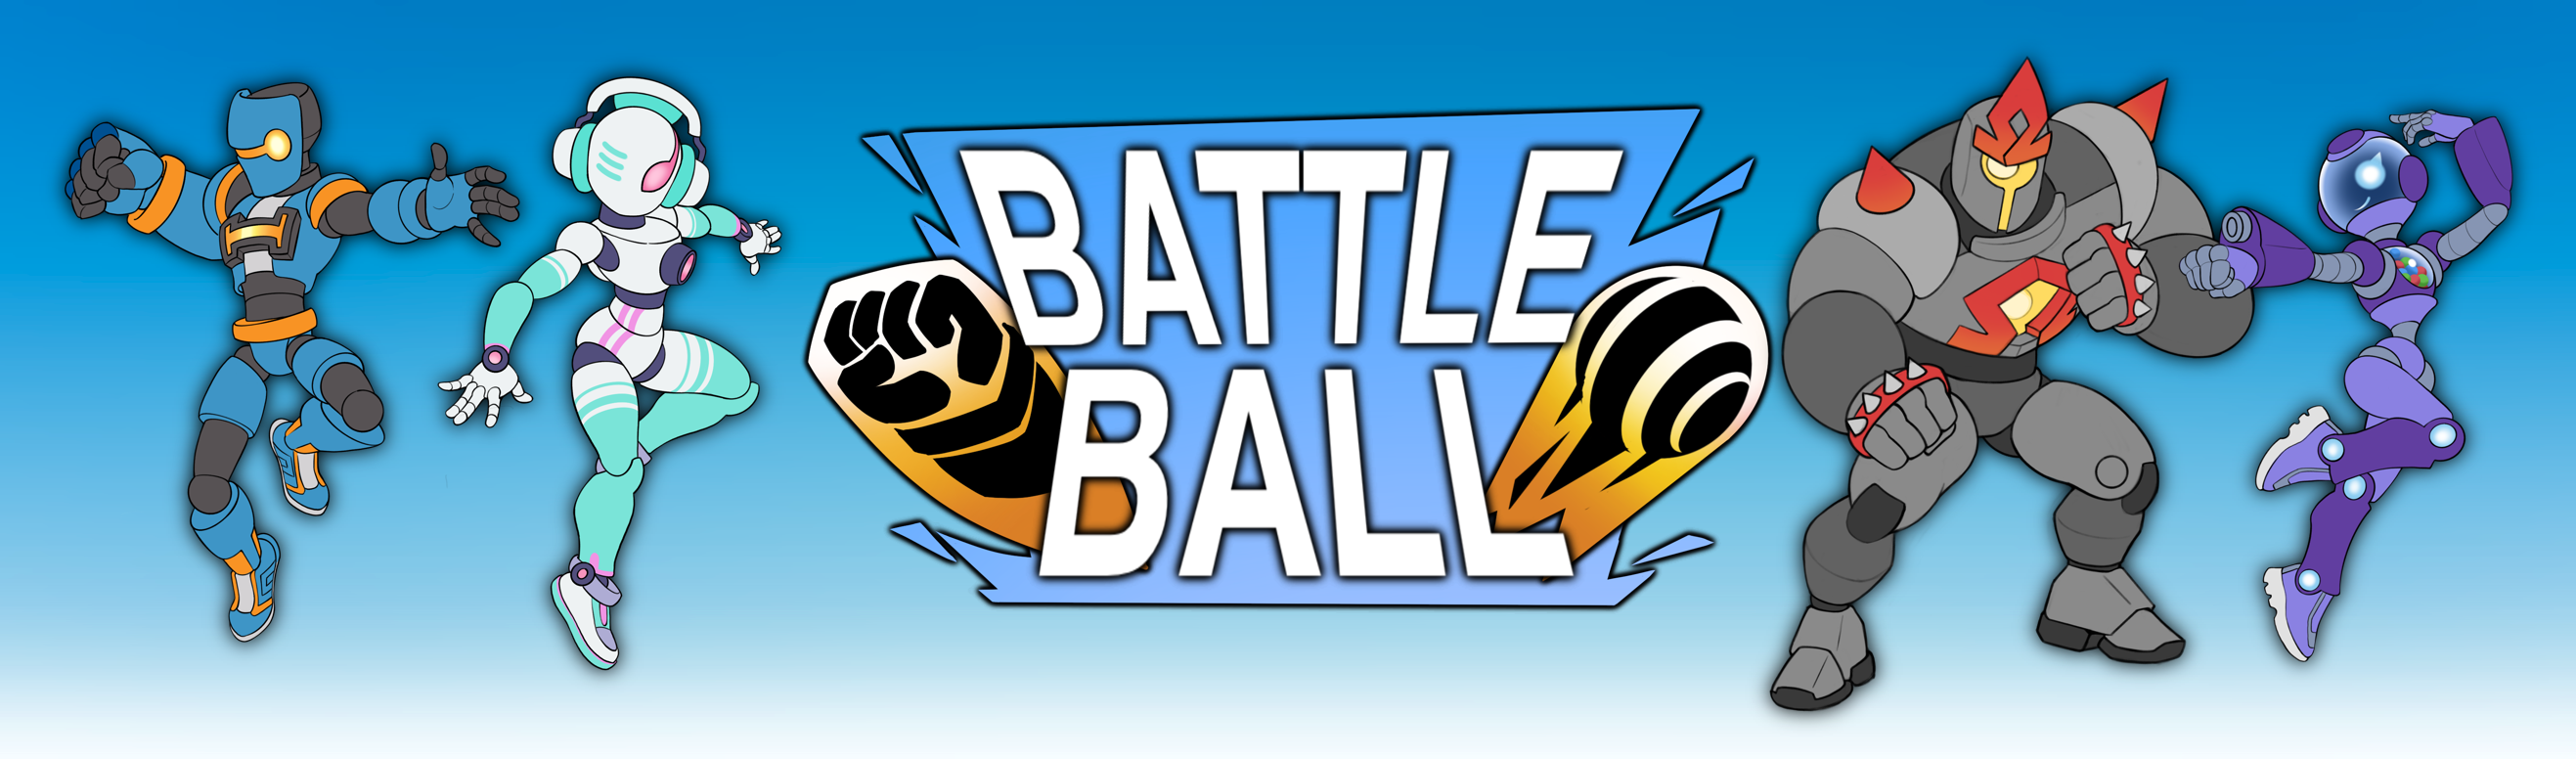 BattleBall